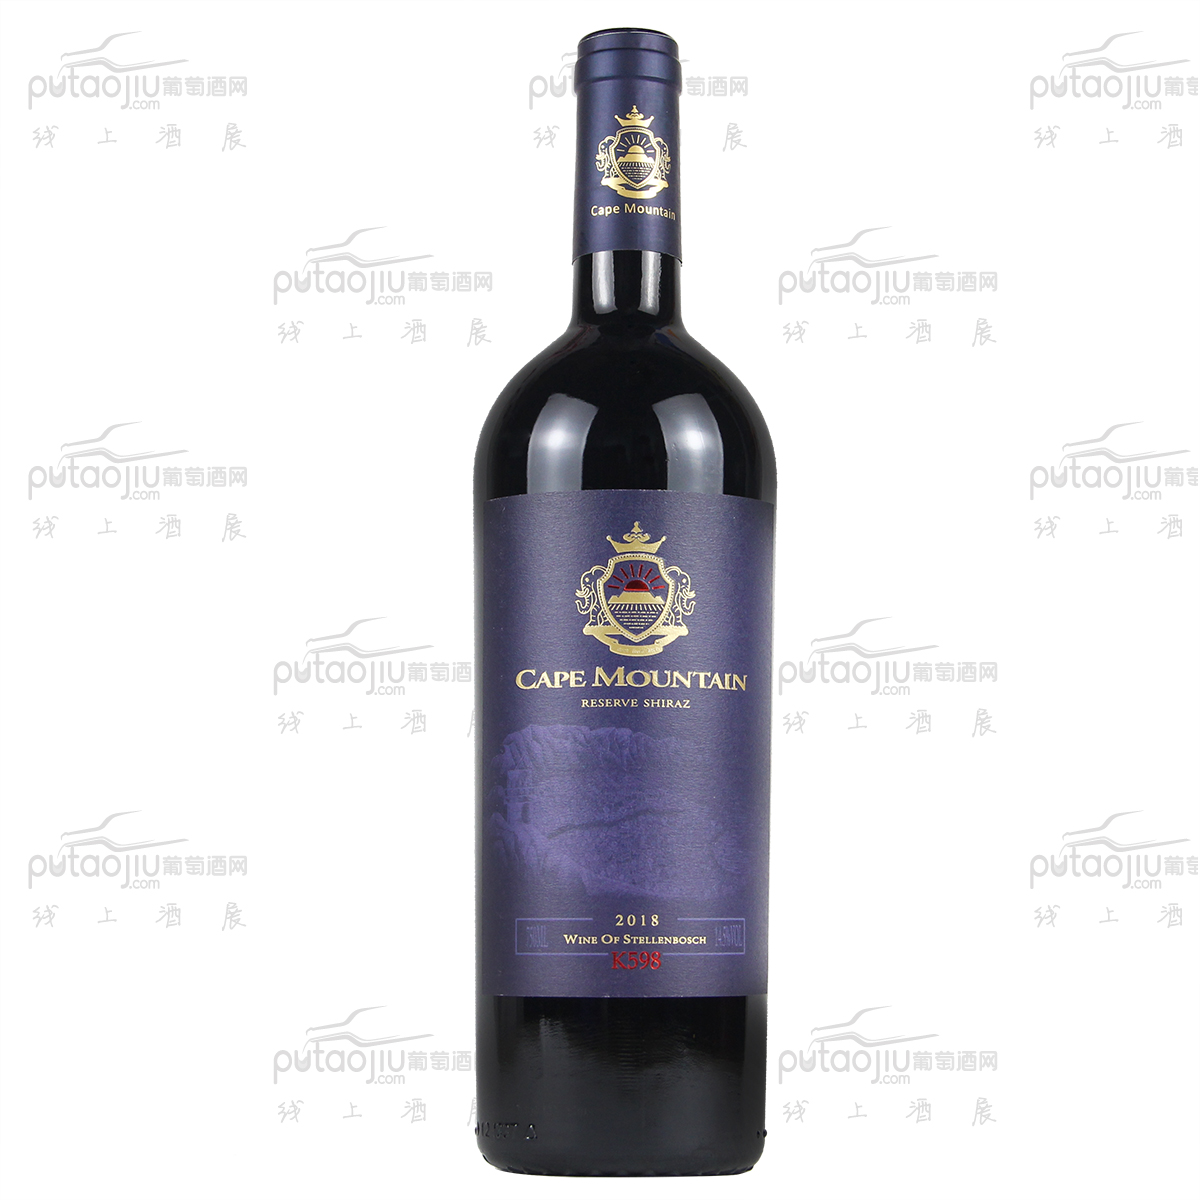 南非开普山酒庄西拉K598中等级别干红葡萄酒